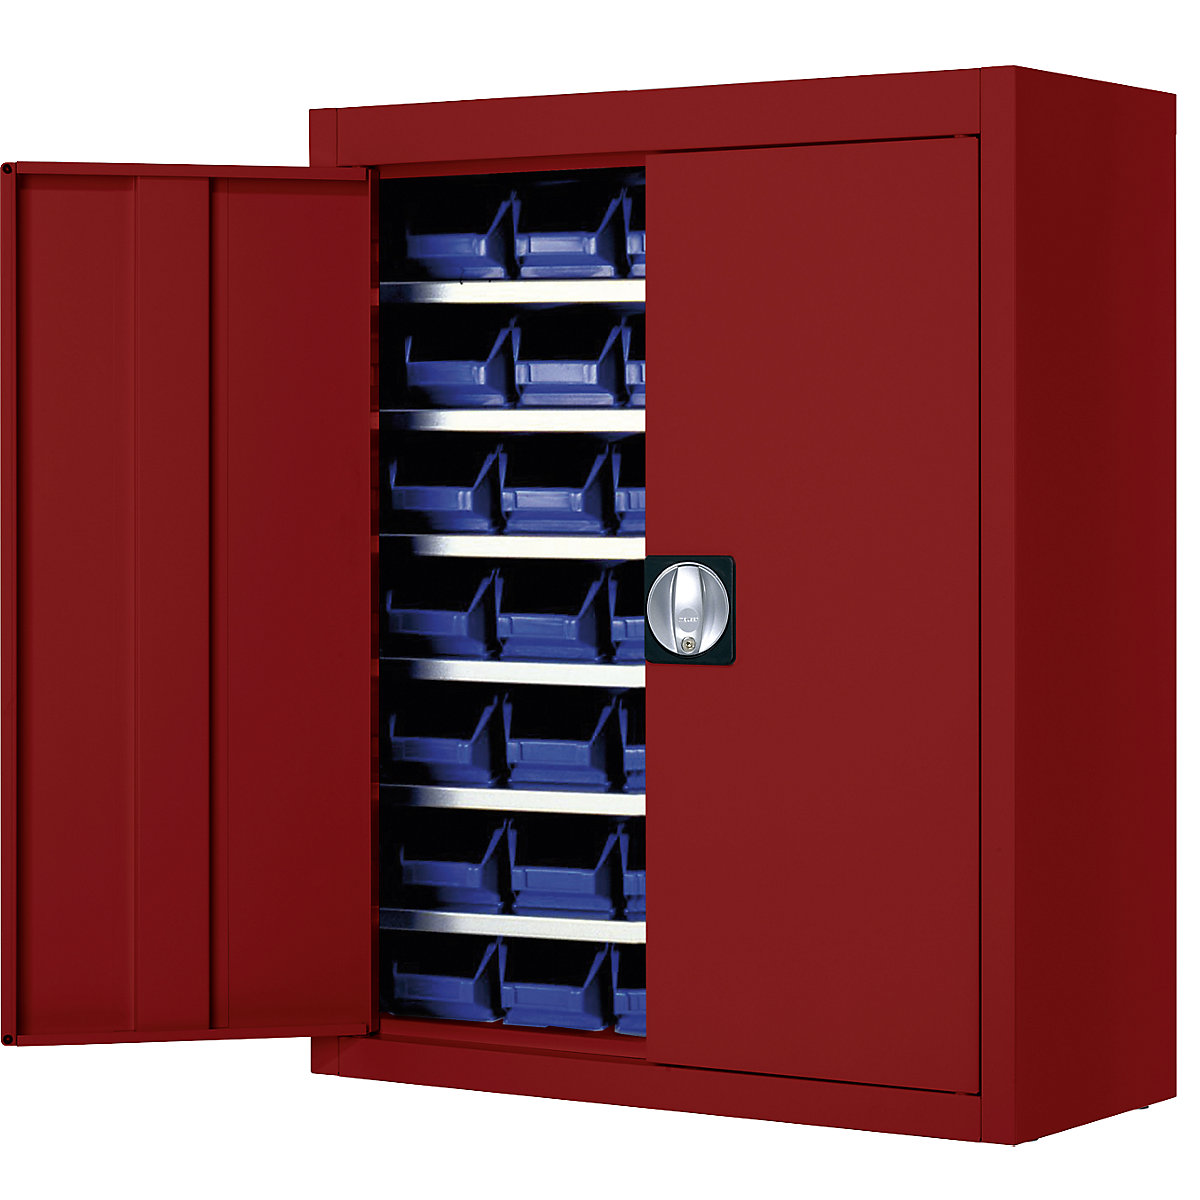 Skladiščna omara z odprtimi skladiščnimi posodami – mauser, VxŠxG 820 x 680 x 280 mm, ena barva, rdeča, 42 posod, od 3 kosov-3